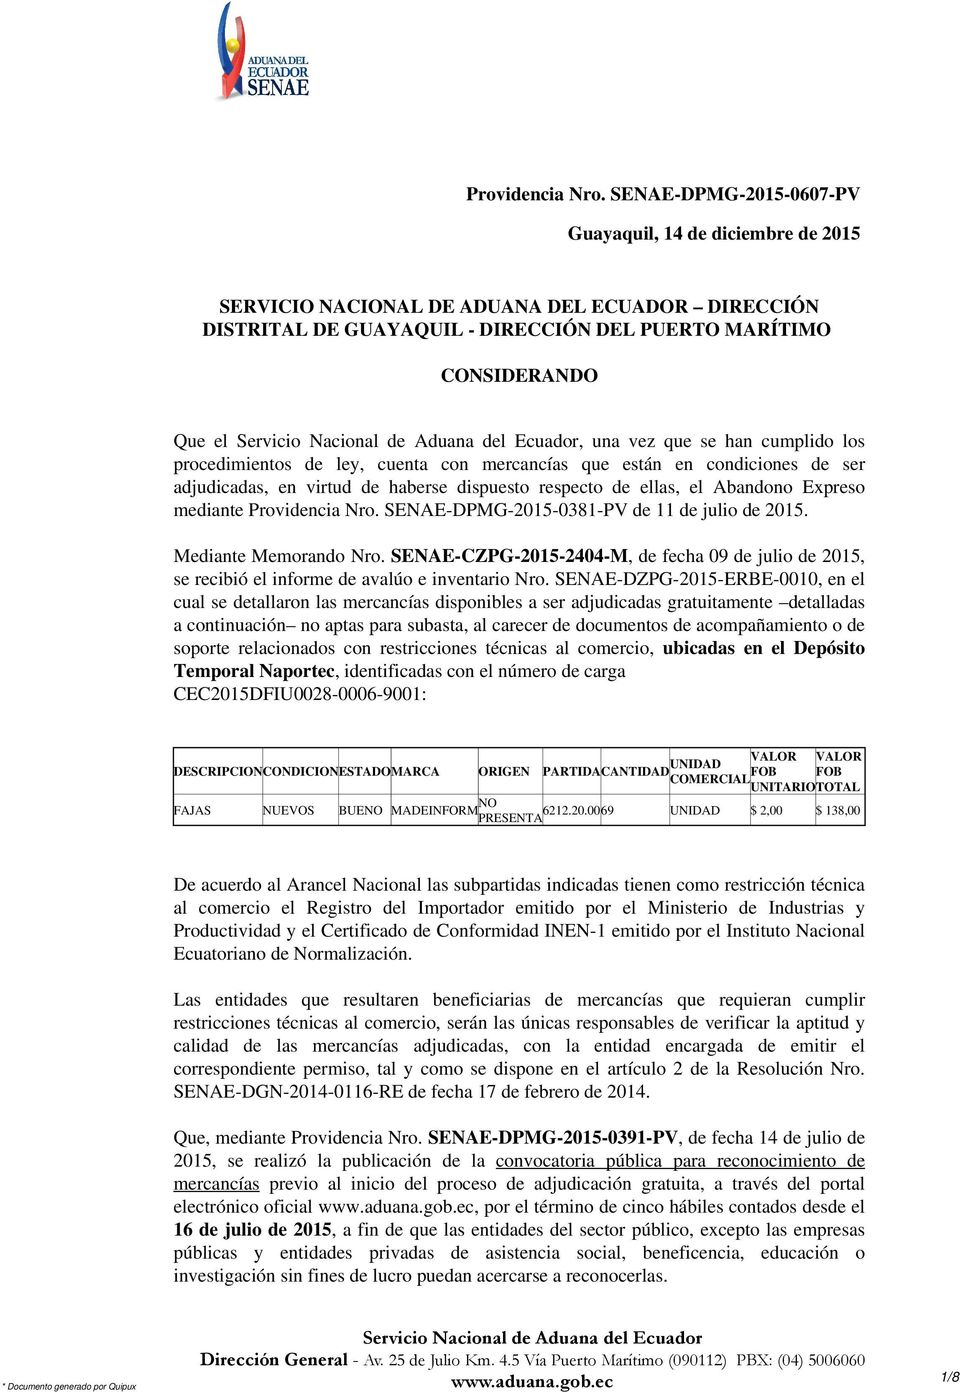 Mediante Memorando Nro. SENAE-CZPG-2015-2404-M, de fecha 09 de julio de 2015, se recibió el informe de avalúo e inventario Nro.